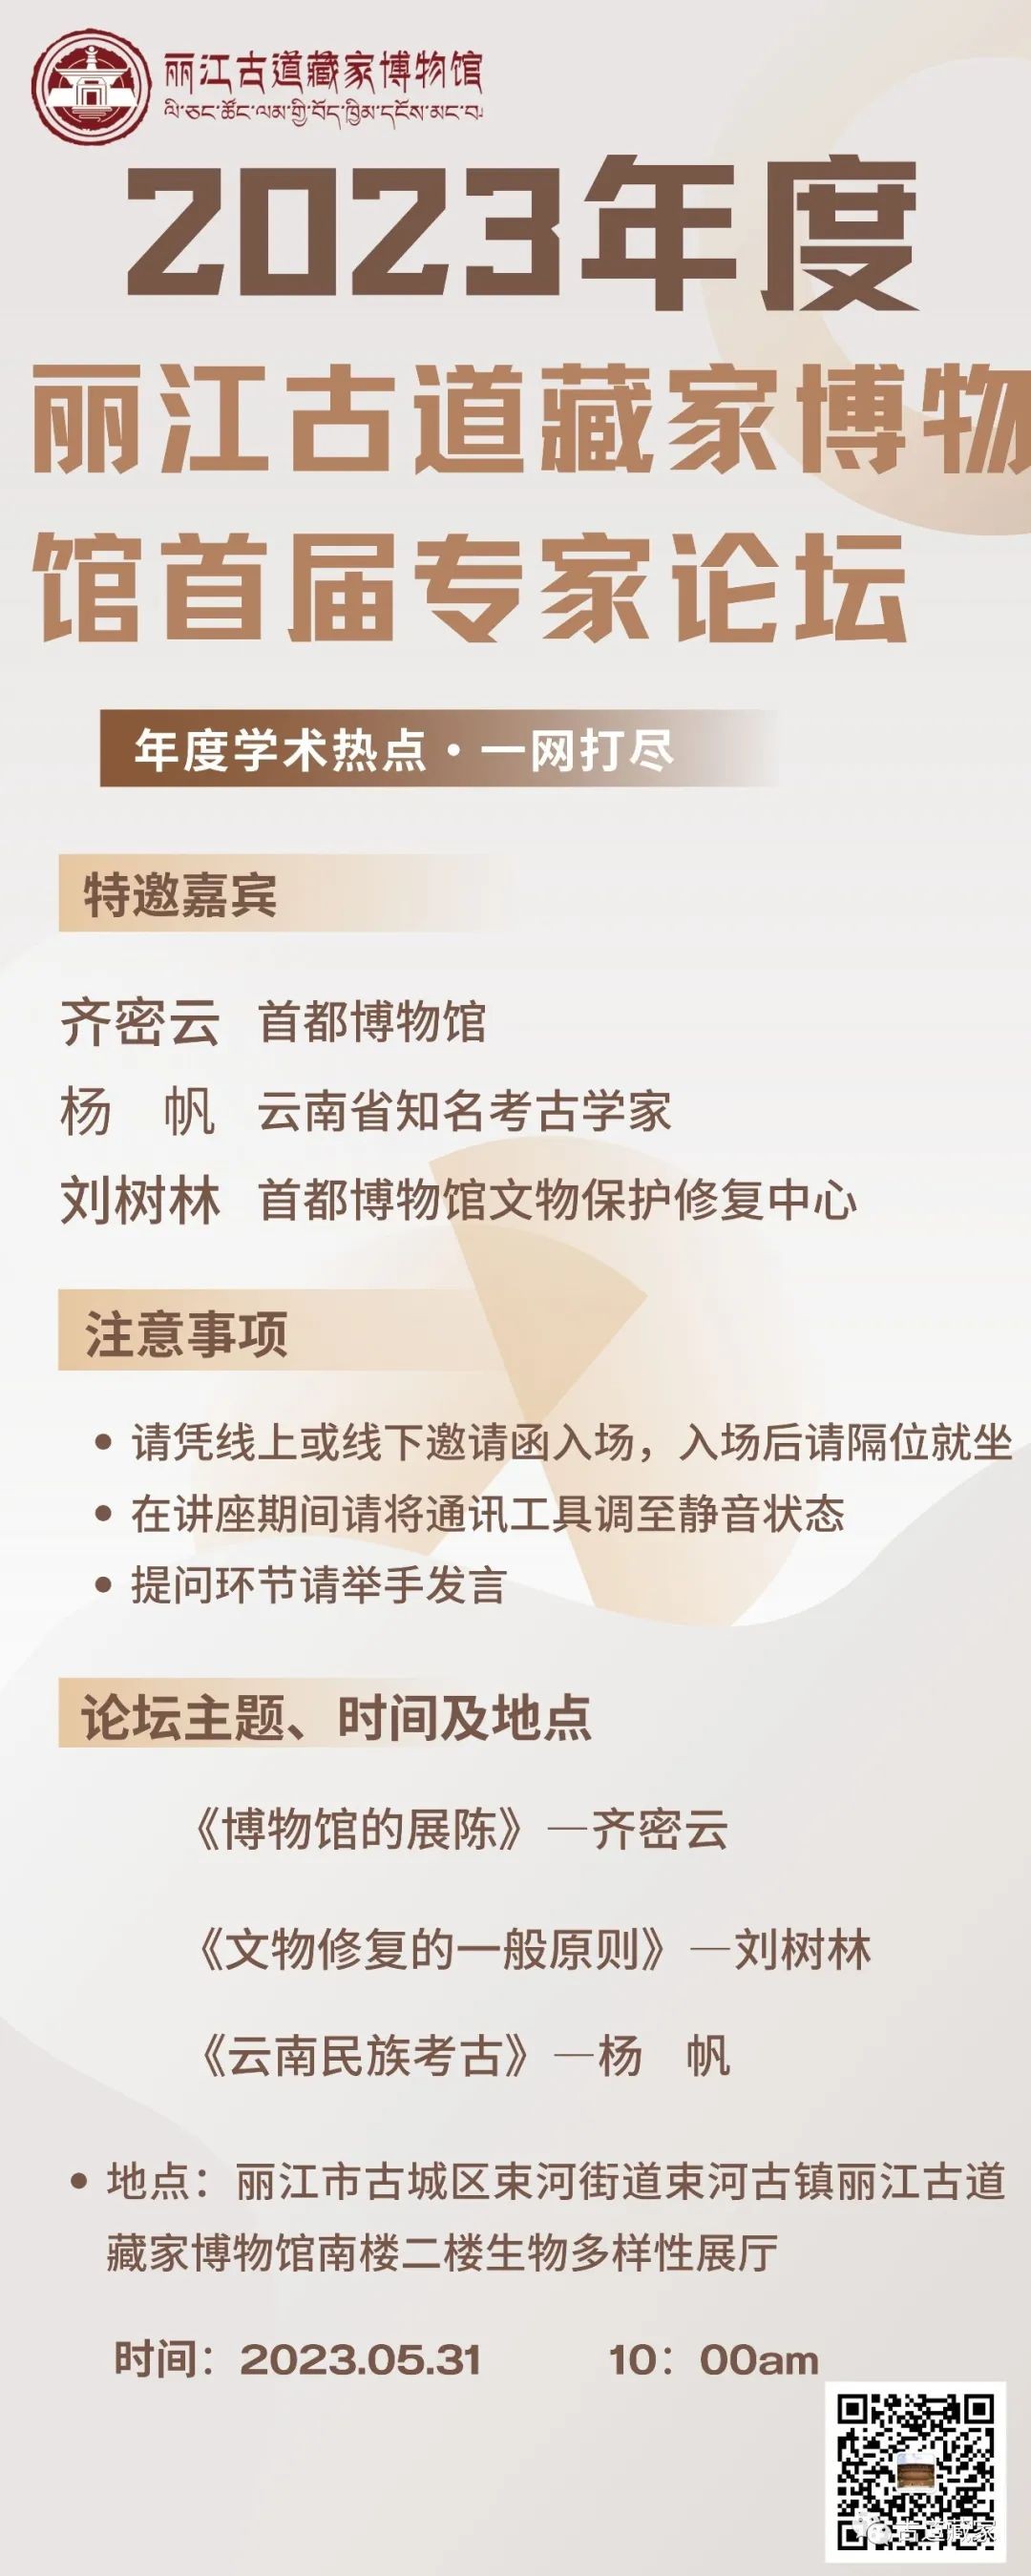 丽江市2023年博物馆建设管理培训班暨丽江古道藏家博物馆首届专家论坛会议